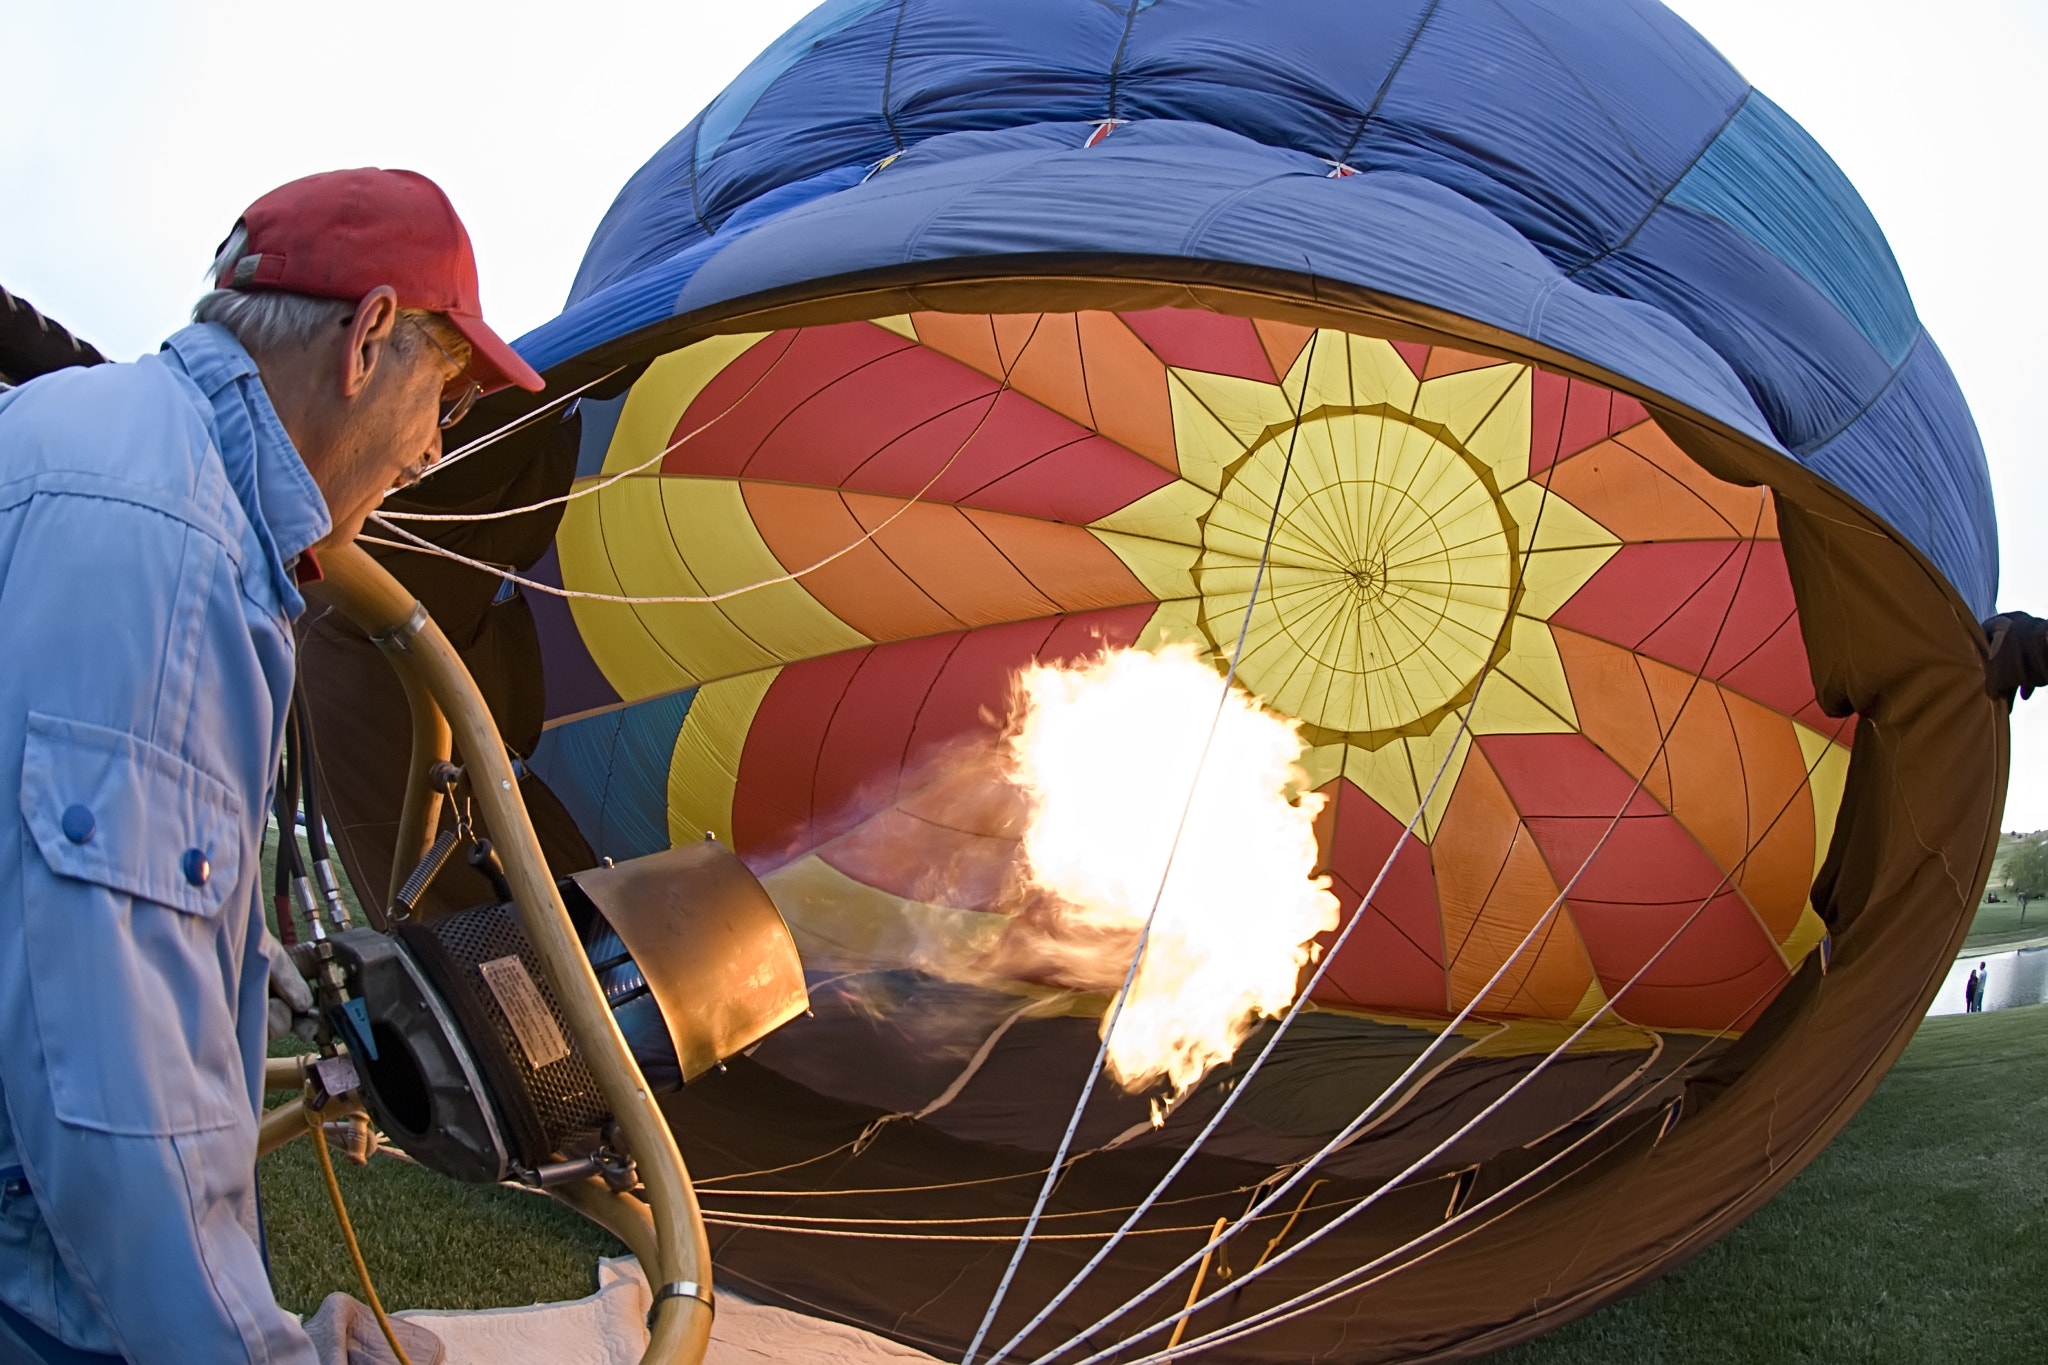 Nikon D80 sample photo. Paso robles hot air balloon festival photography